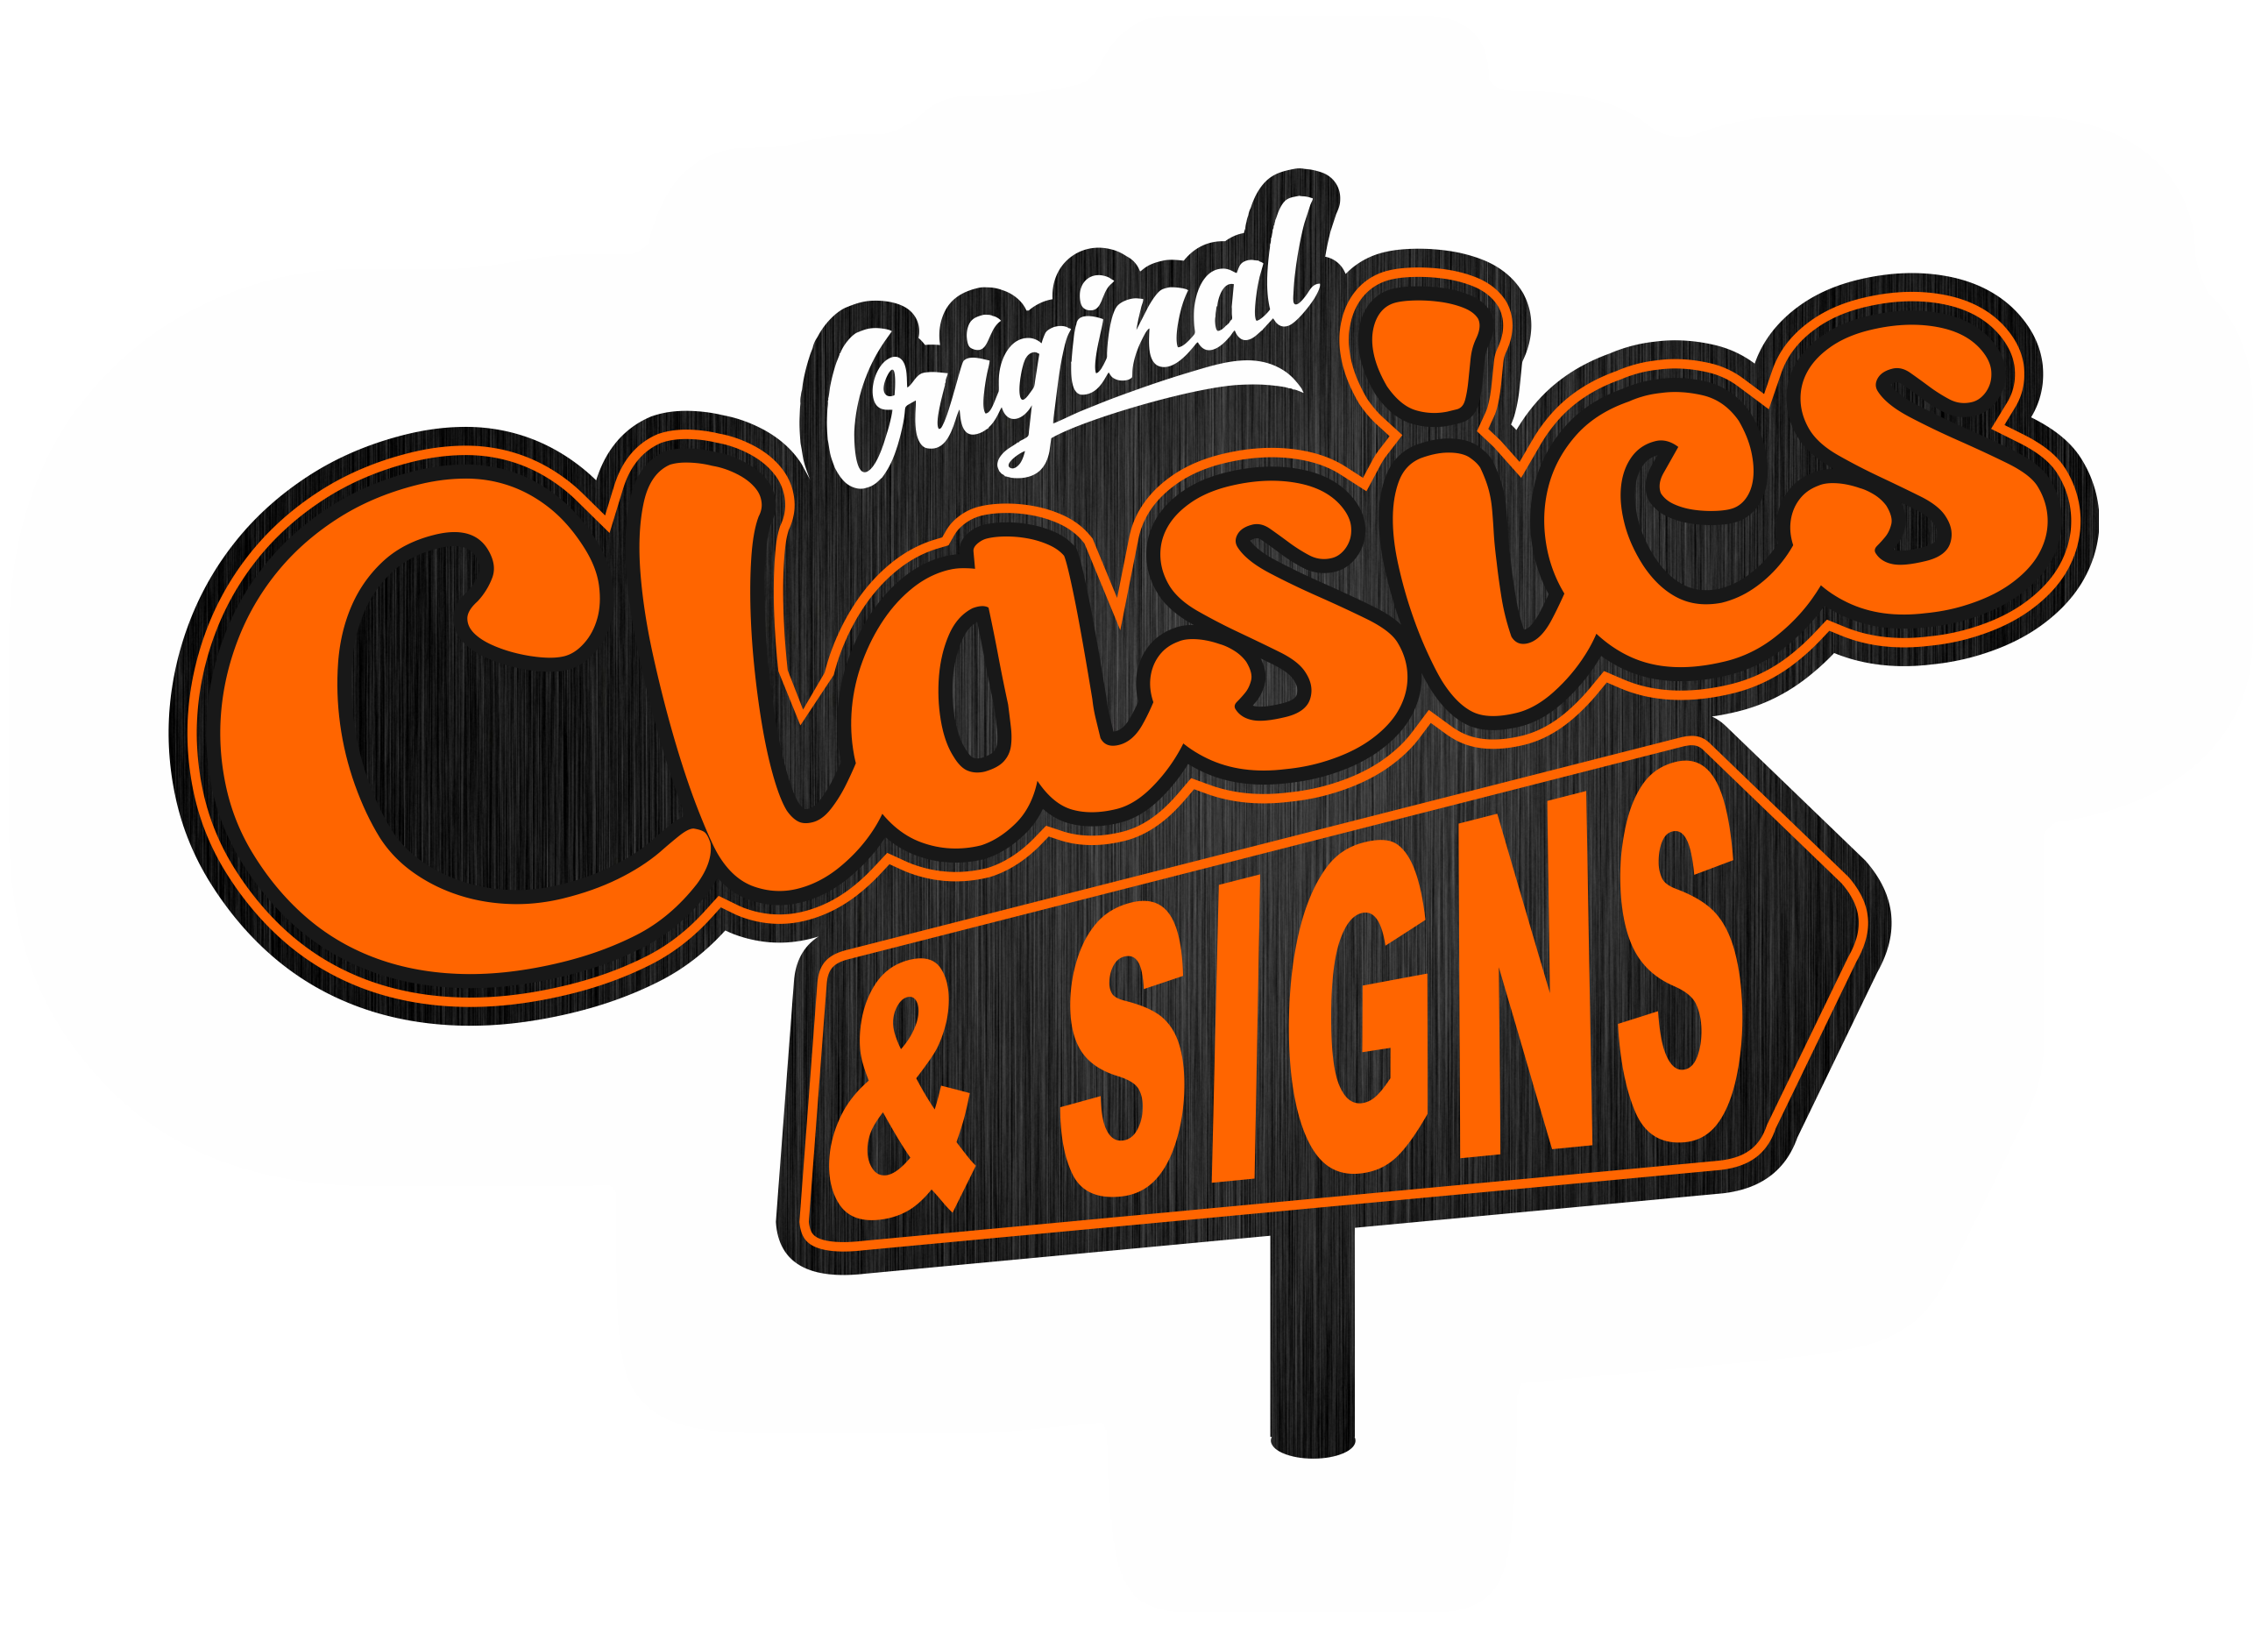 Original Clasics and Signs